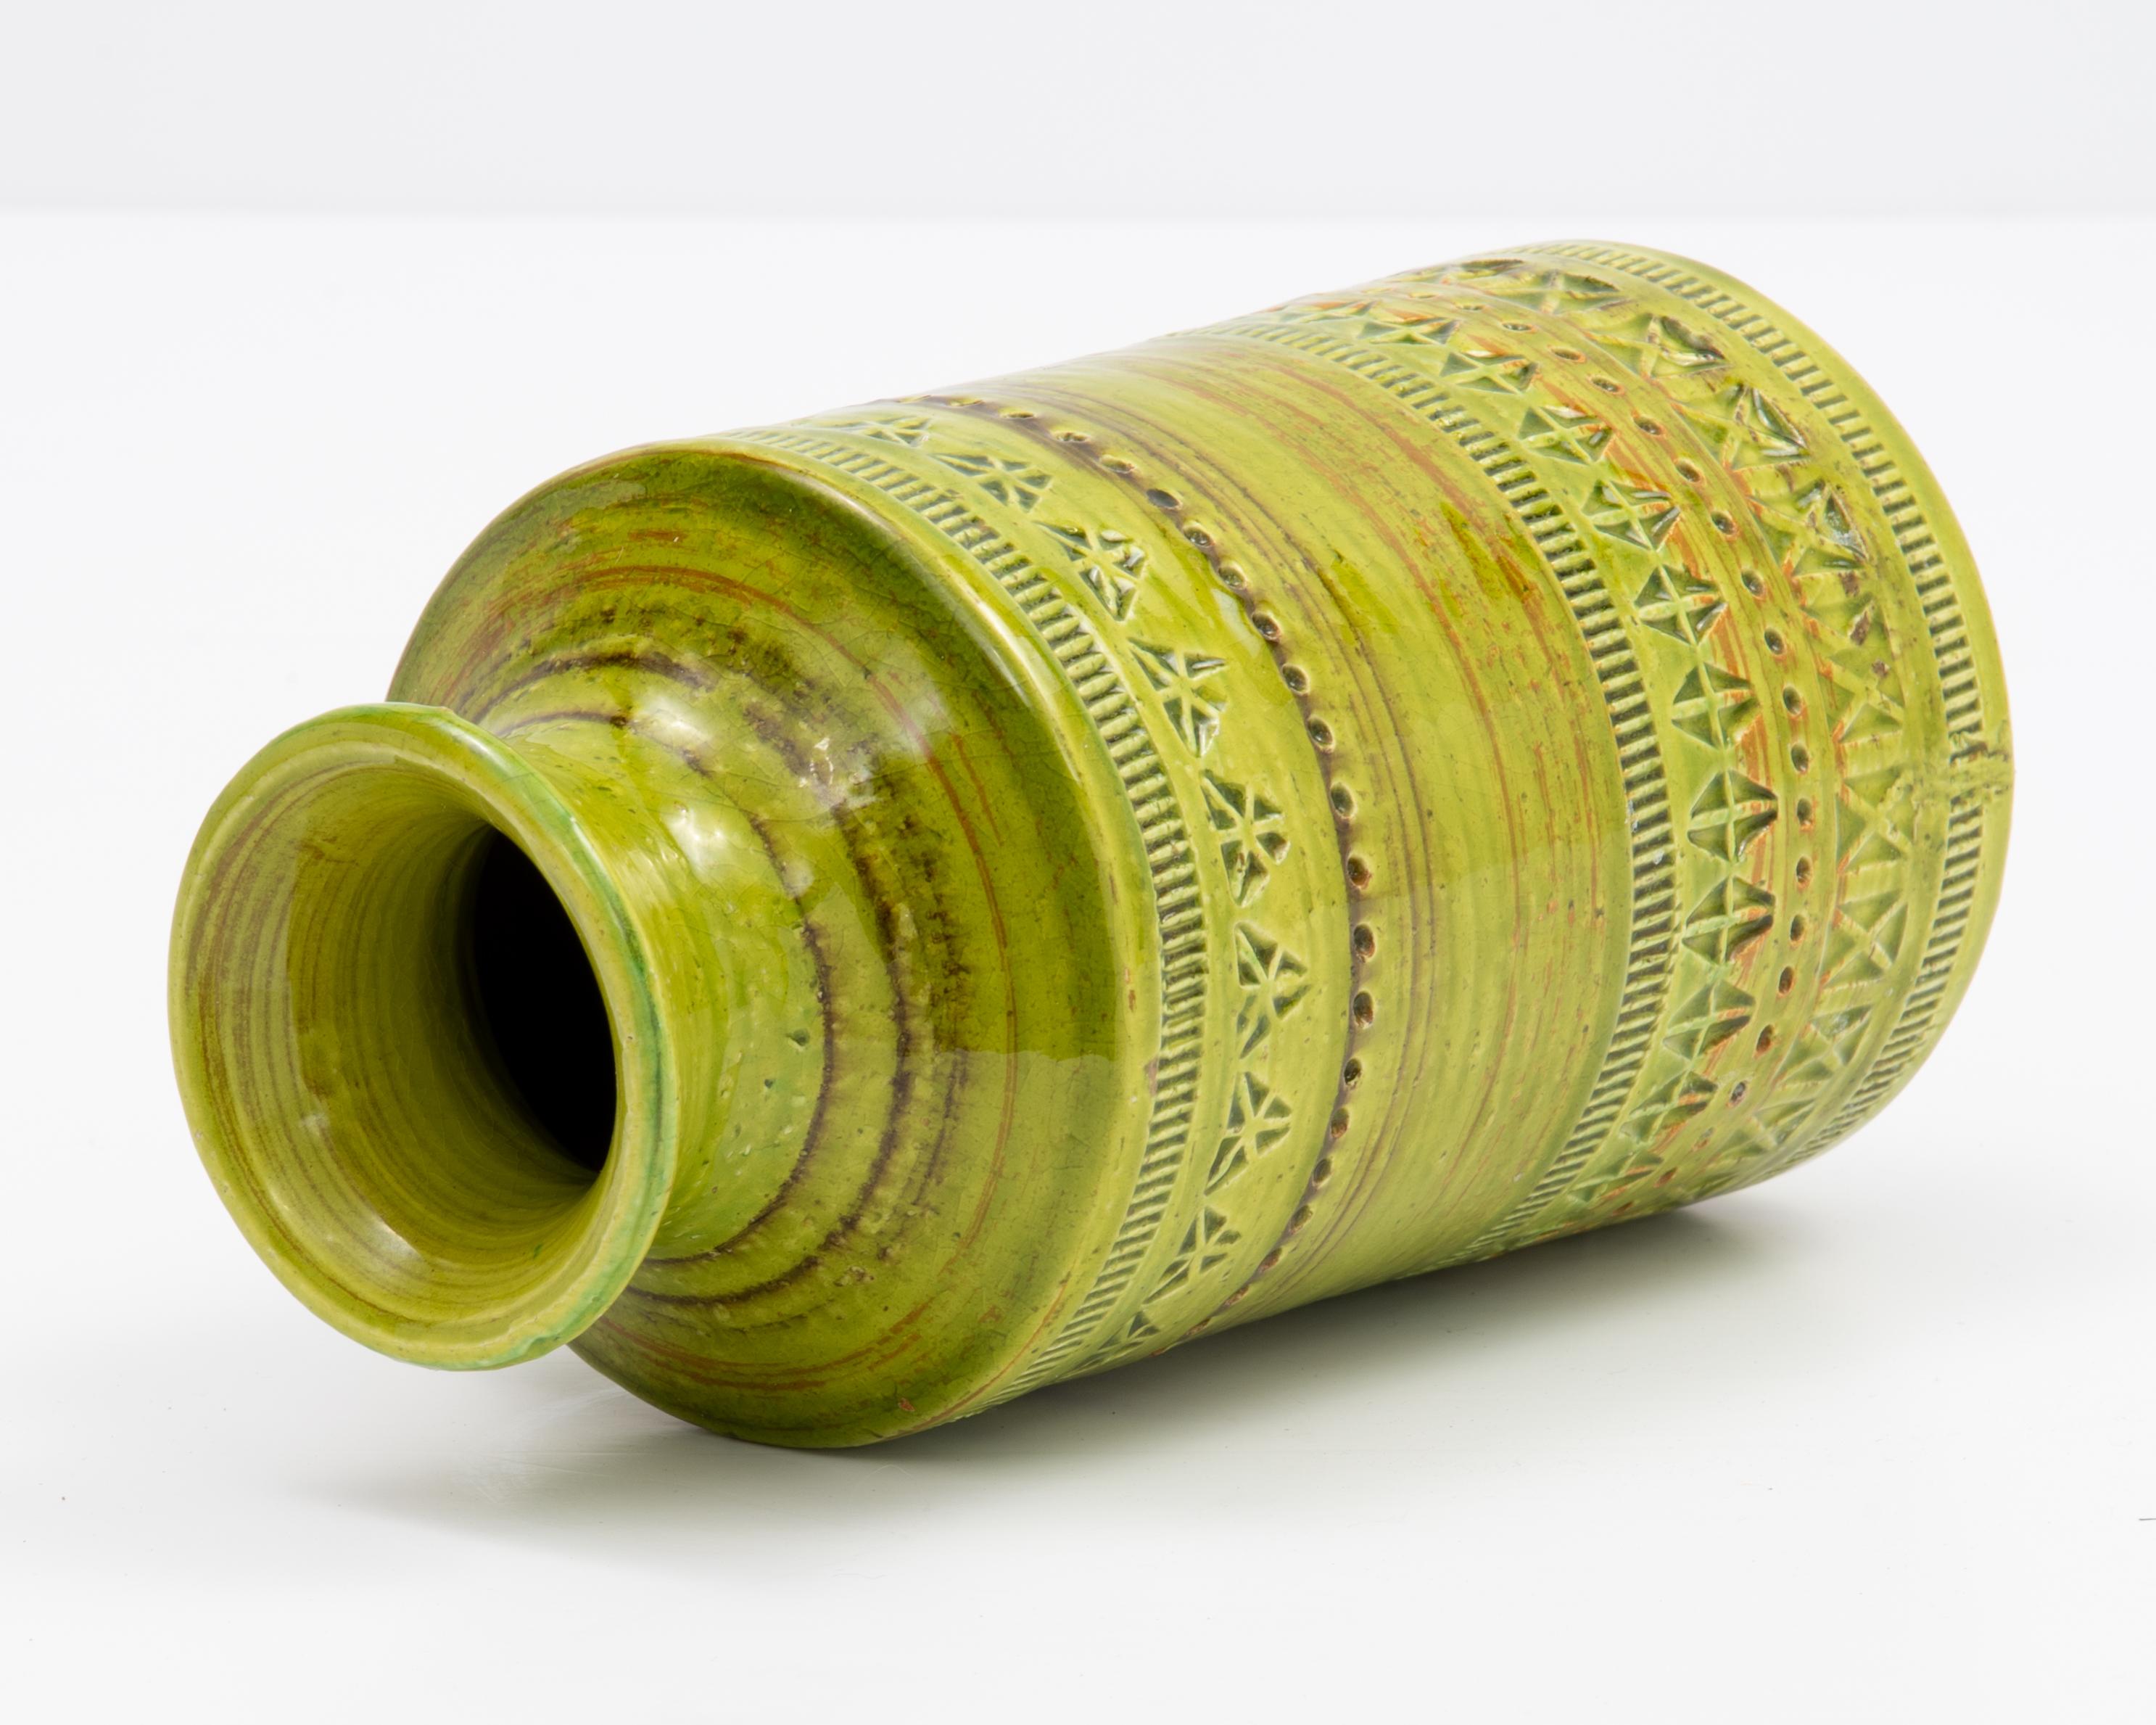 Green Aldo Londi Bitossi Rosenthal Netter Incised Vase For Sale 3